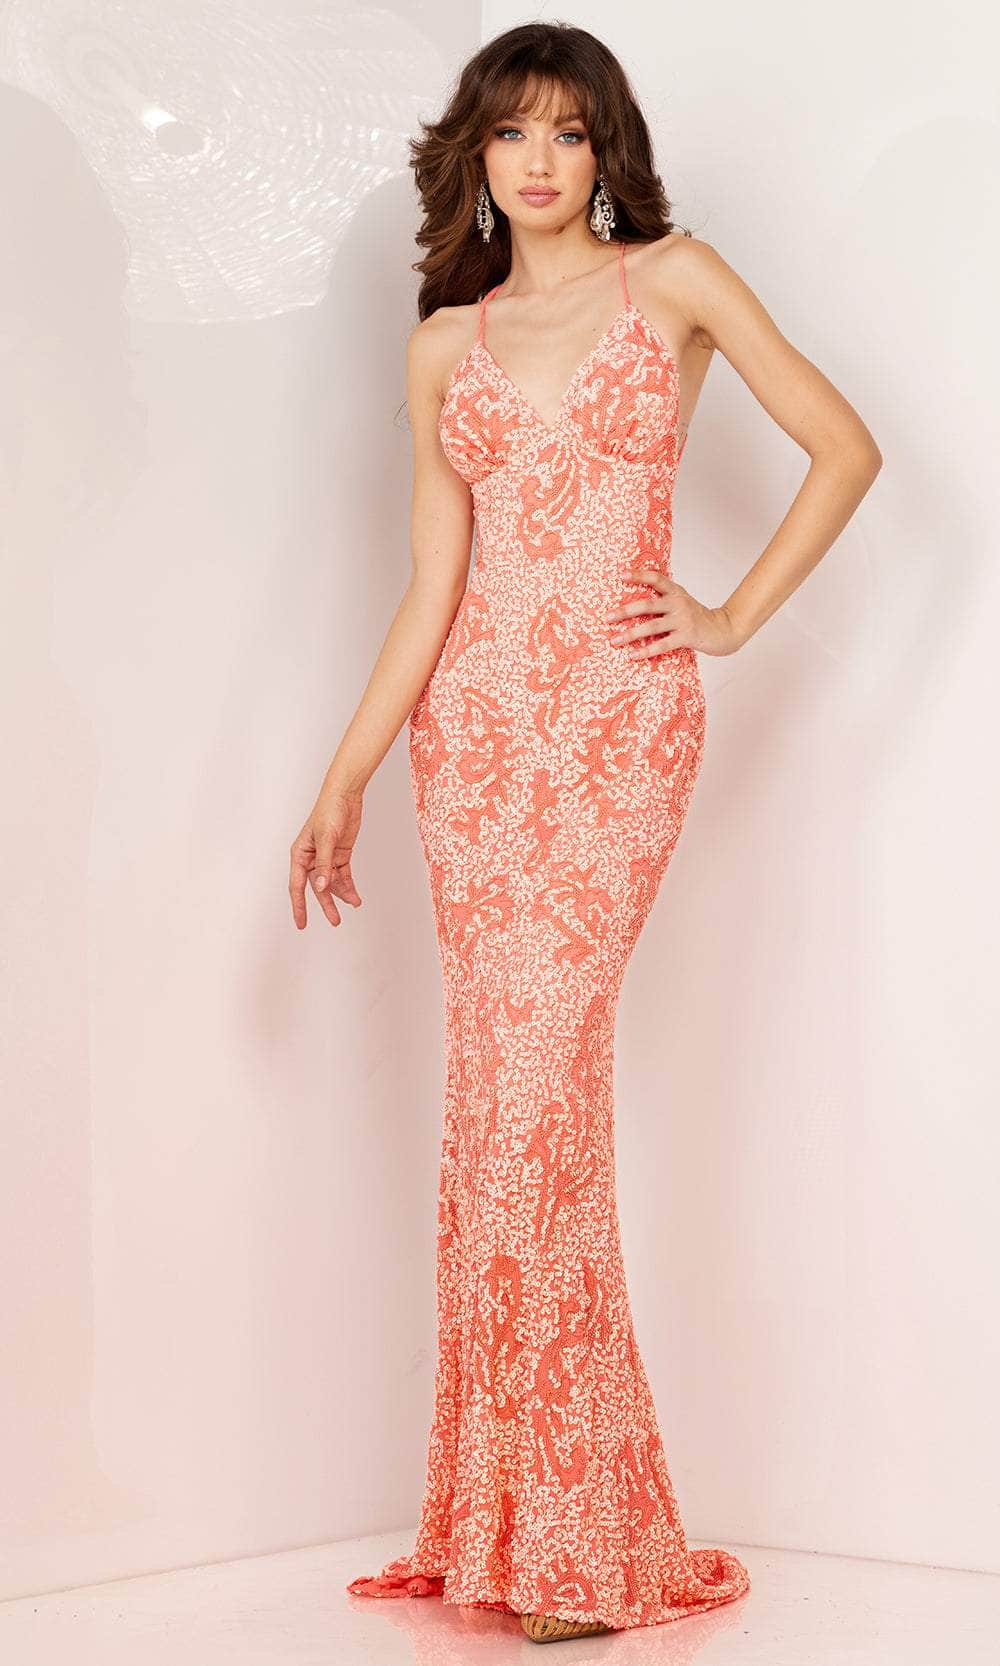 Aleta Couture 274 - Empire Sleeveless Evening Dress Evening Dresses